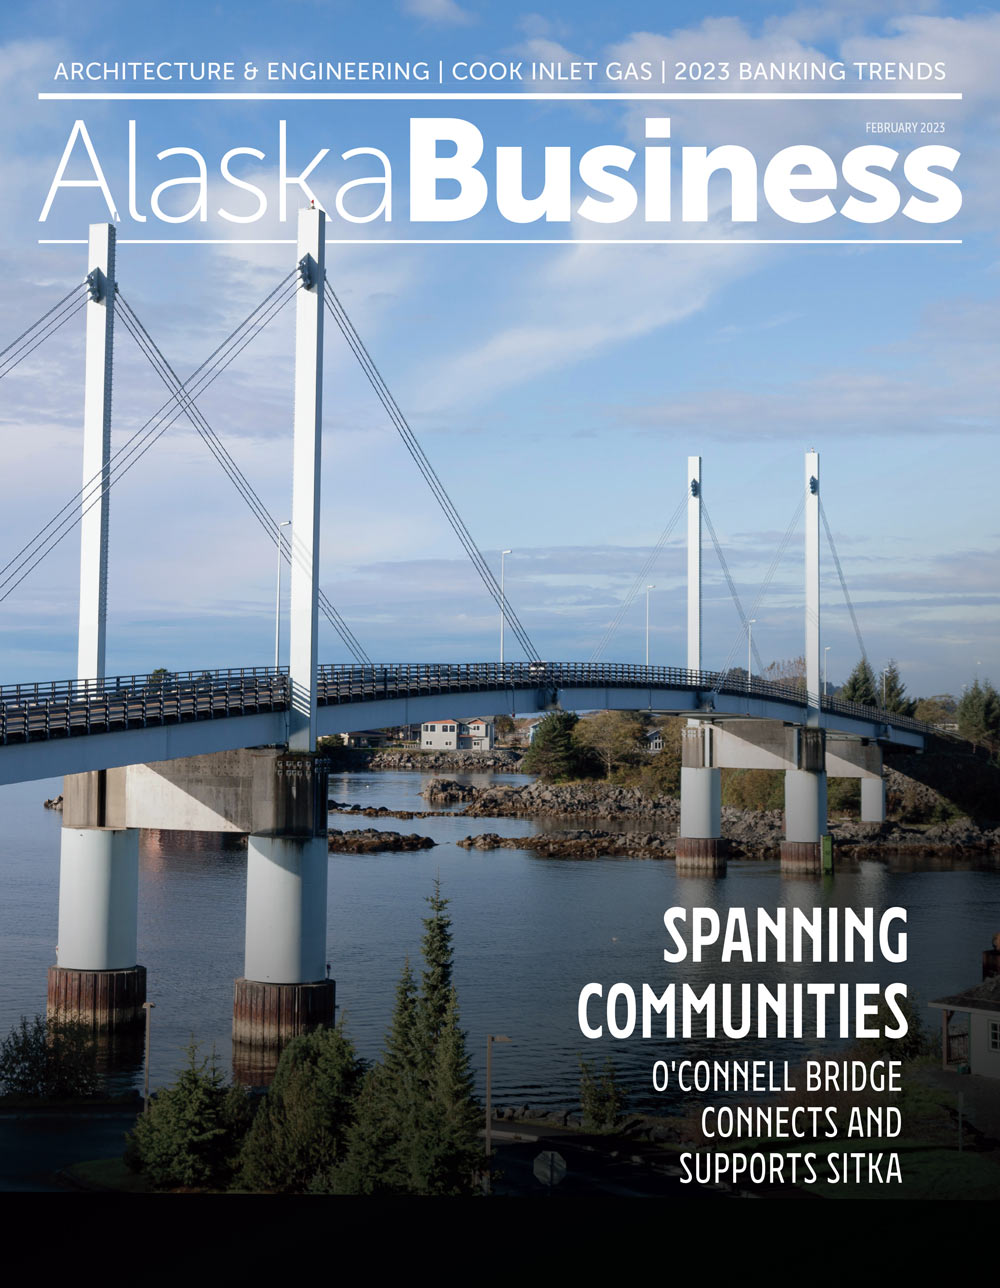 Alaska Business February 2023 cover